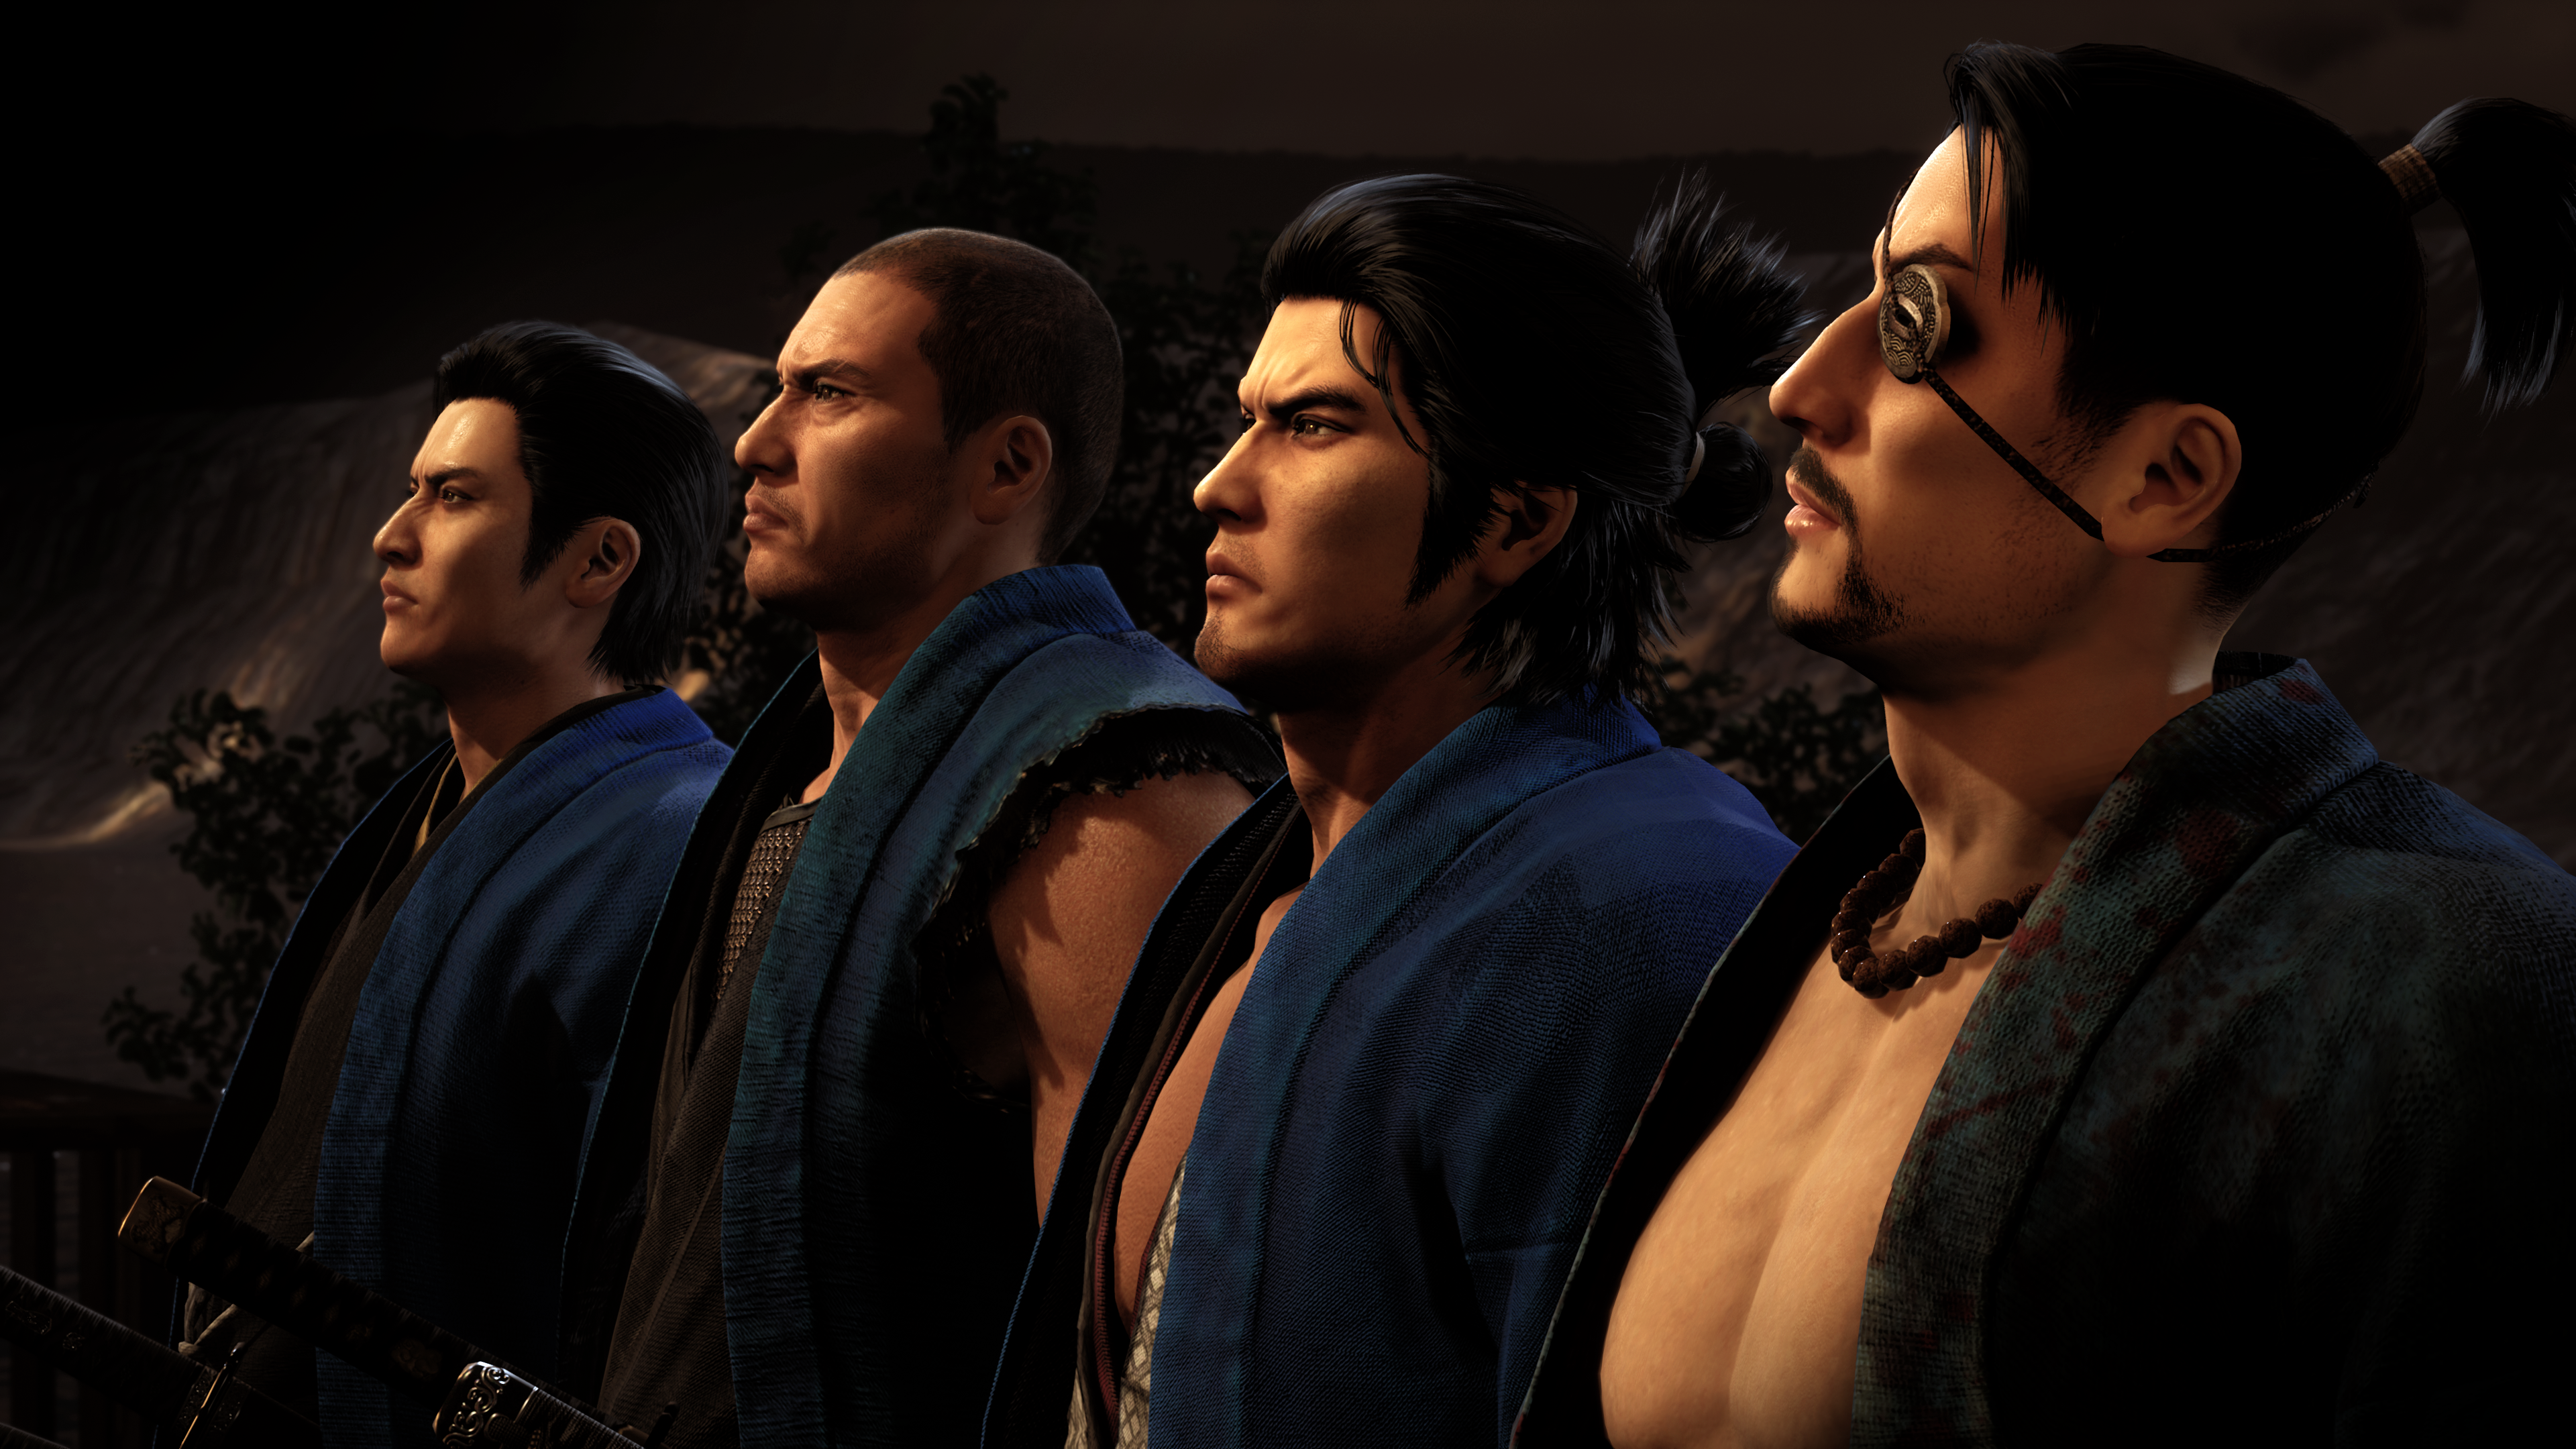 Une photo de 4 membres du Sinsengumi portant des uniformes bleus.  De gauche à droite : Hijikata Toshizo (inspiré de la mine Yoshitaka), Nagakura Shinpachi (inspiré de Taiga Saejima), Sakamoto Ryoma (inspiré de Kazuma Kiryu), Okita Soji (inspiré de Goro Majima)